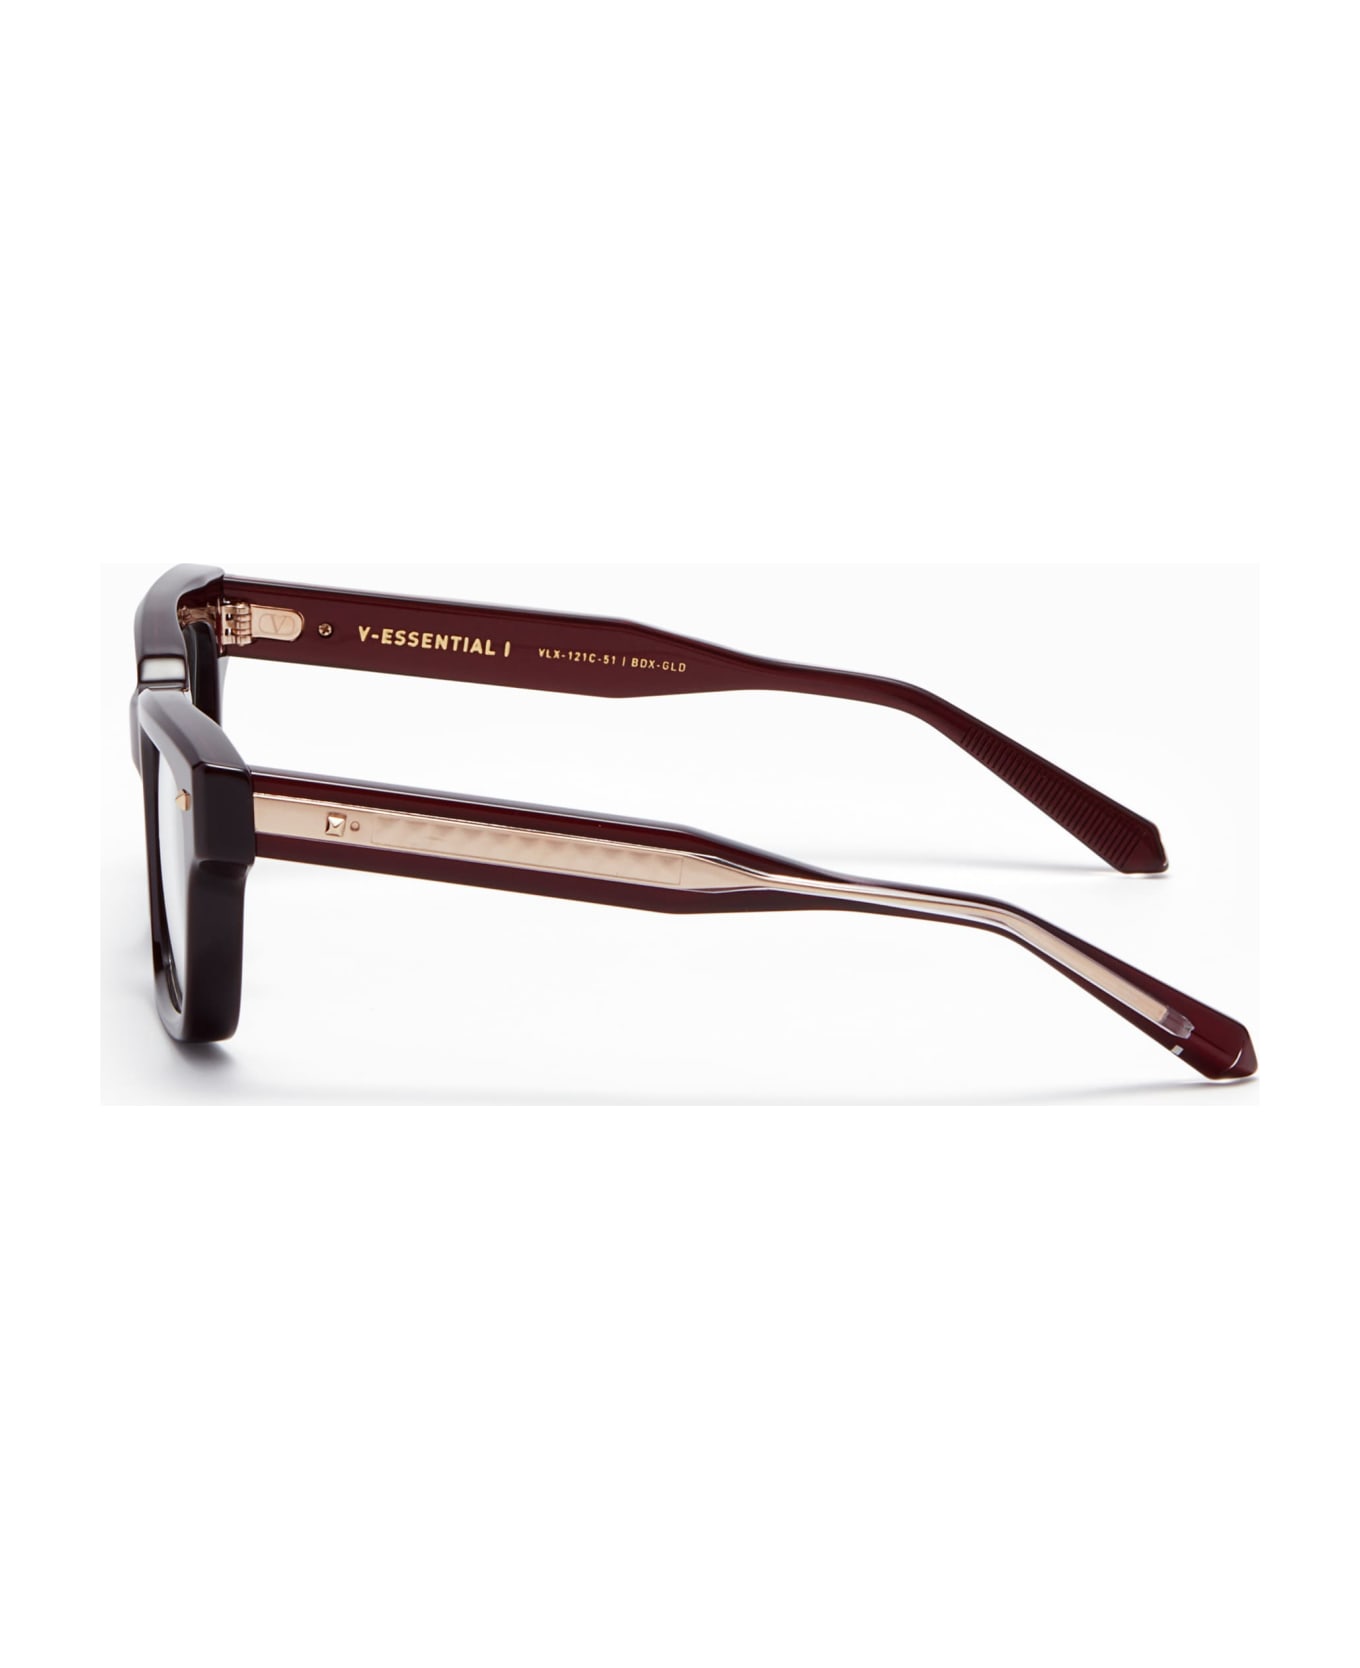 Valentino Eyewear V-essential I - Burgundy Rx Glasses - burgundy アイウェア